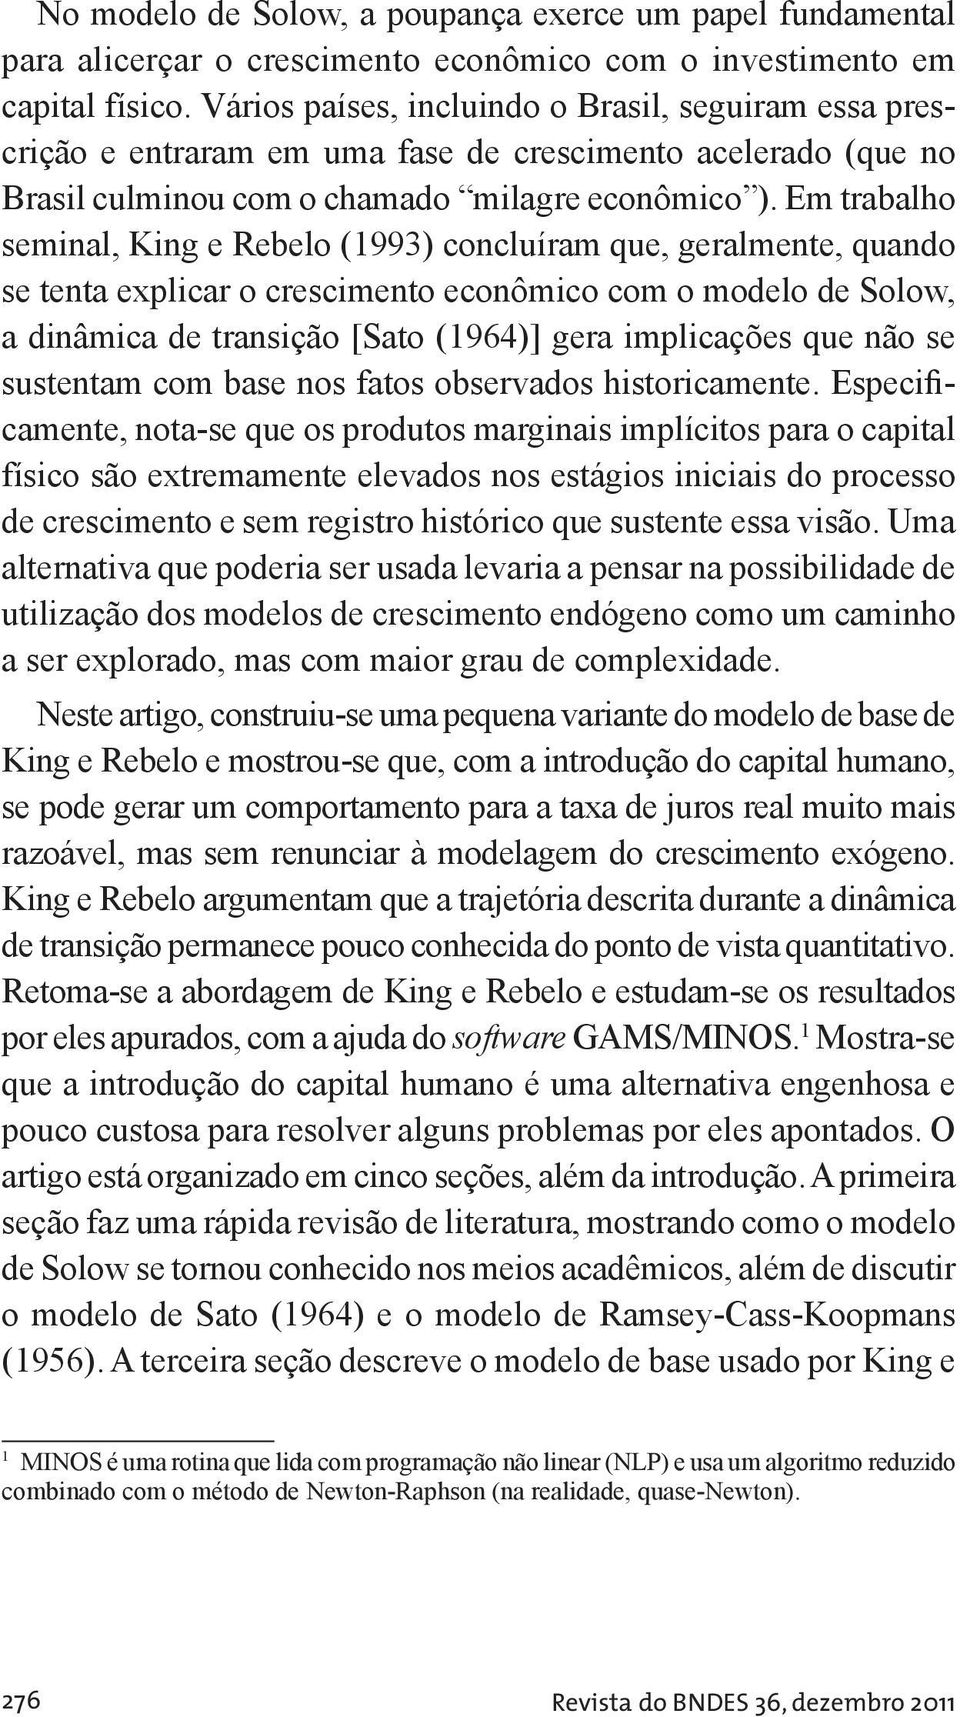 Em rabalho seminal, King e Rebelo (993) concluíram que, geralmene, quando se ena explicar o crescimeno econômico com o modelo de Solow, a dinâmica de ransição [Sao (964)] gera implicações que não se